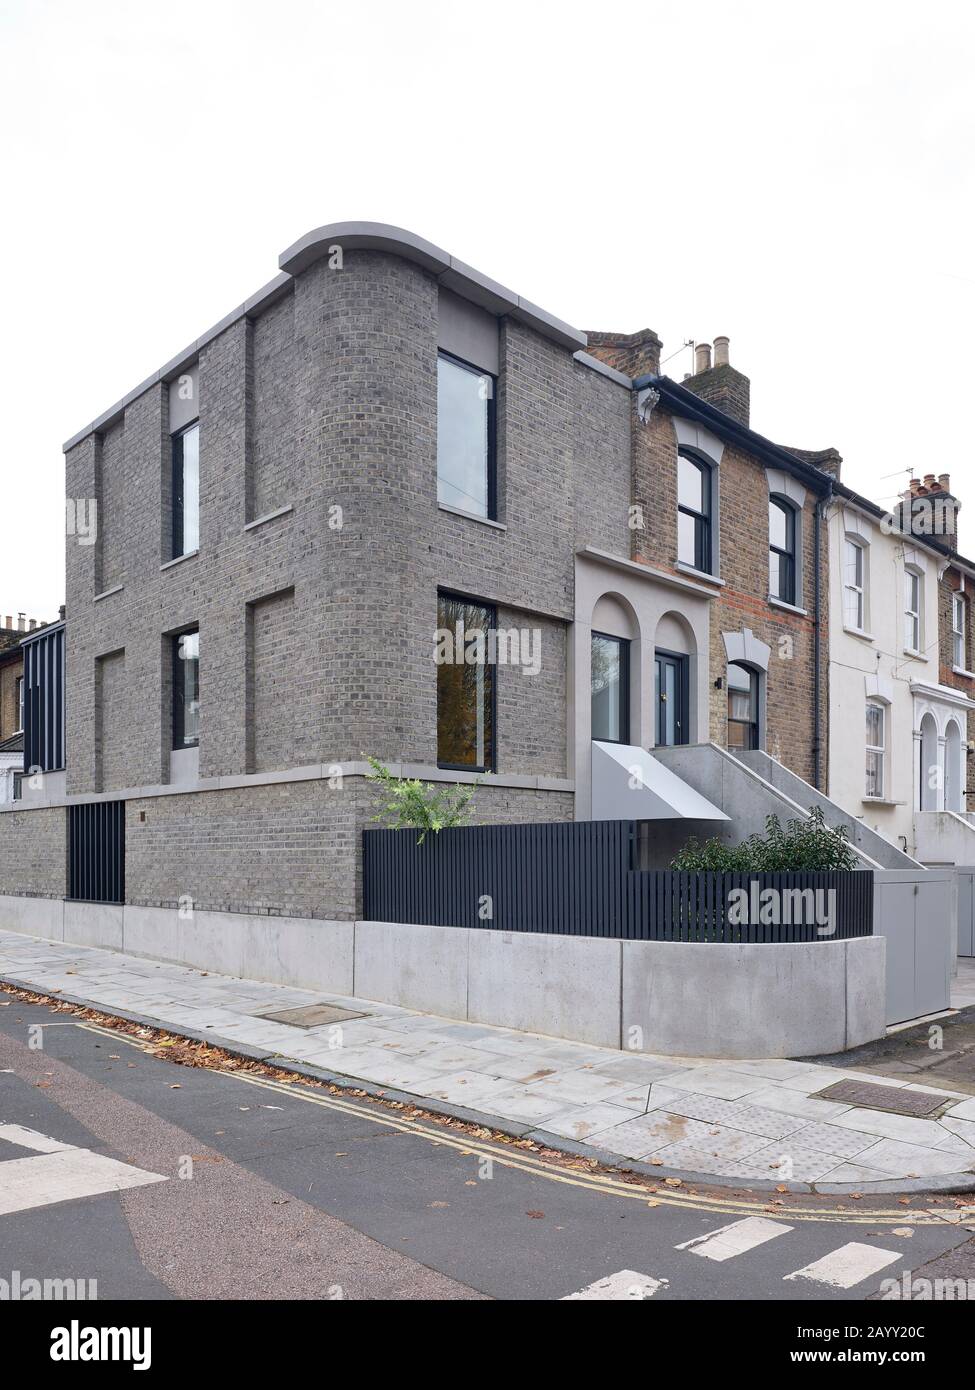 Altezza angolare dell'edificio dall'altra parte della strada. Corner House, Londra, Regno Unito. Architetto: 31/44 Architetti, 2019. Foto Stock